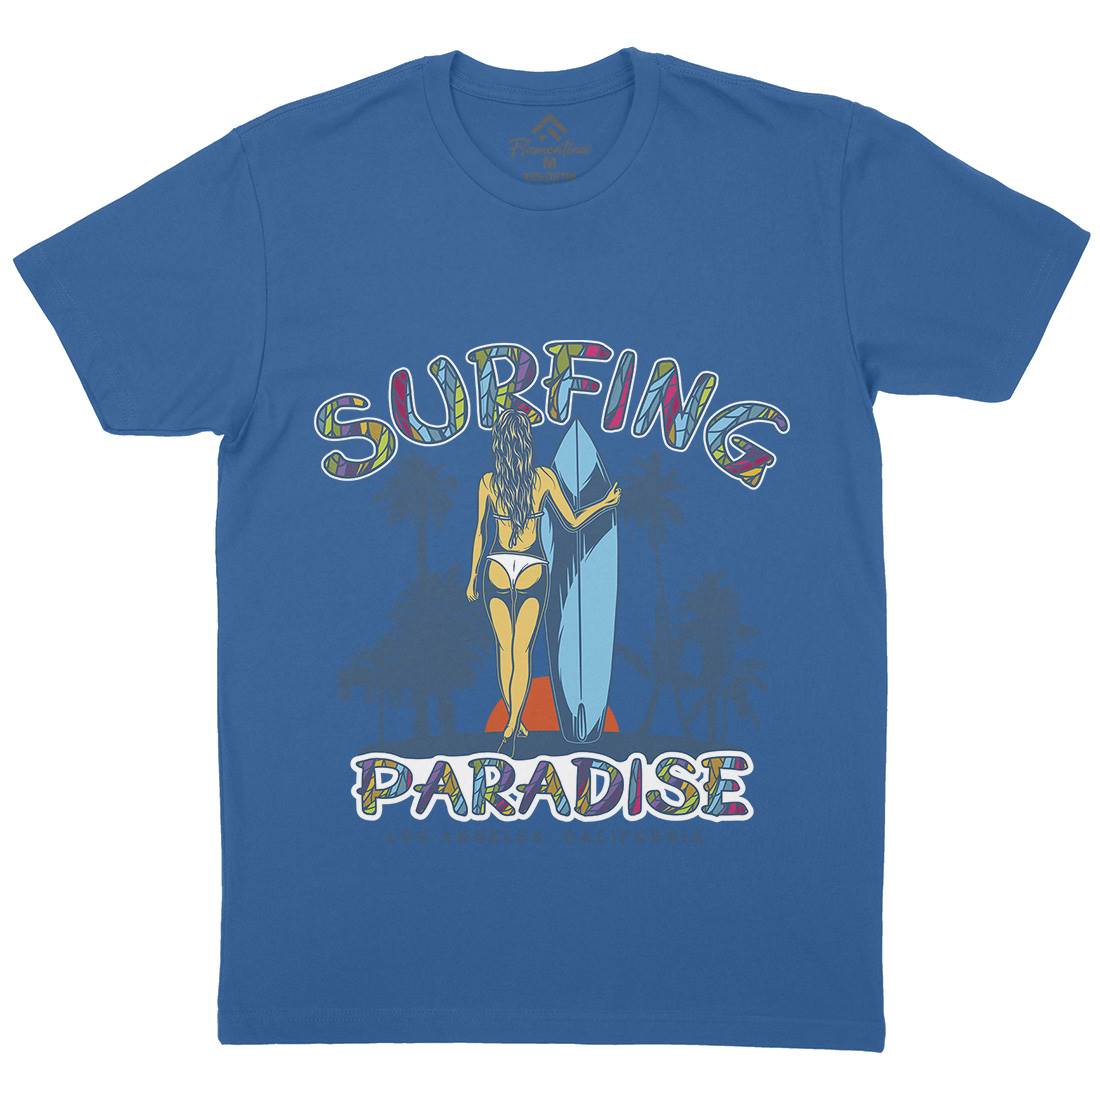 Surfing Paradise La Mens Crew Neck T-Shirt Surf D990